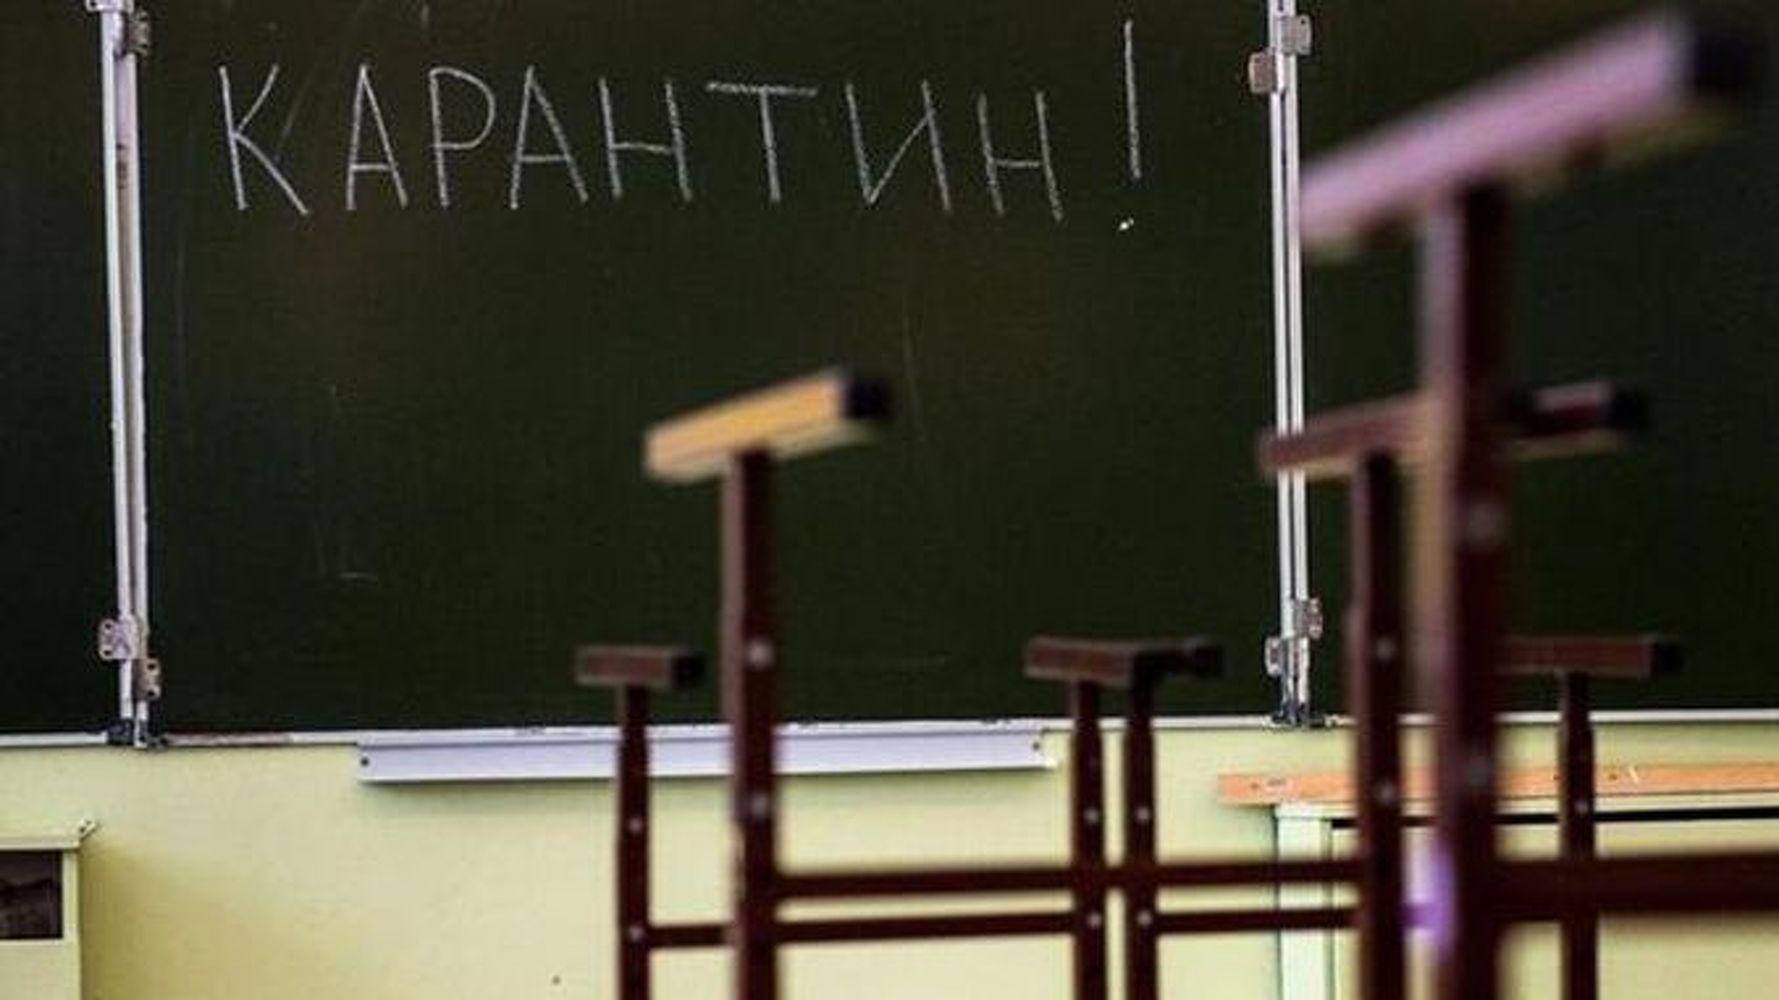 Почали хворіти вчителі та сім'ї учнів: у школі на Волині виявили спалах коронавірусу - Україна новини - Освіта